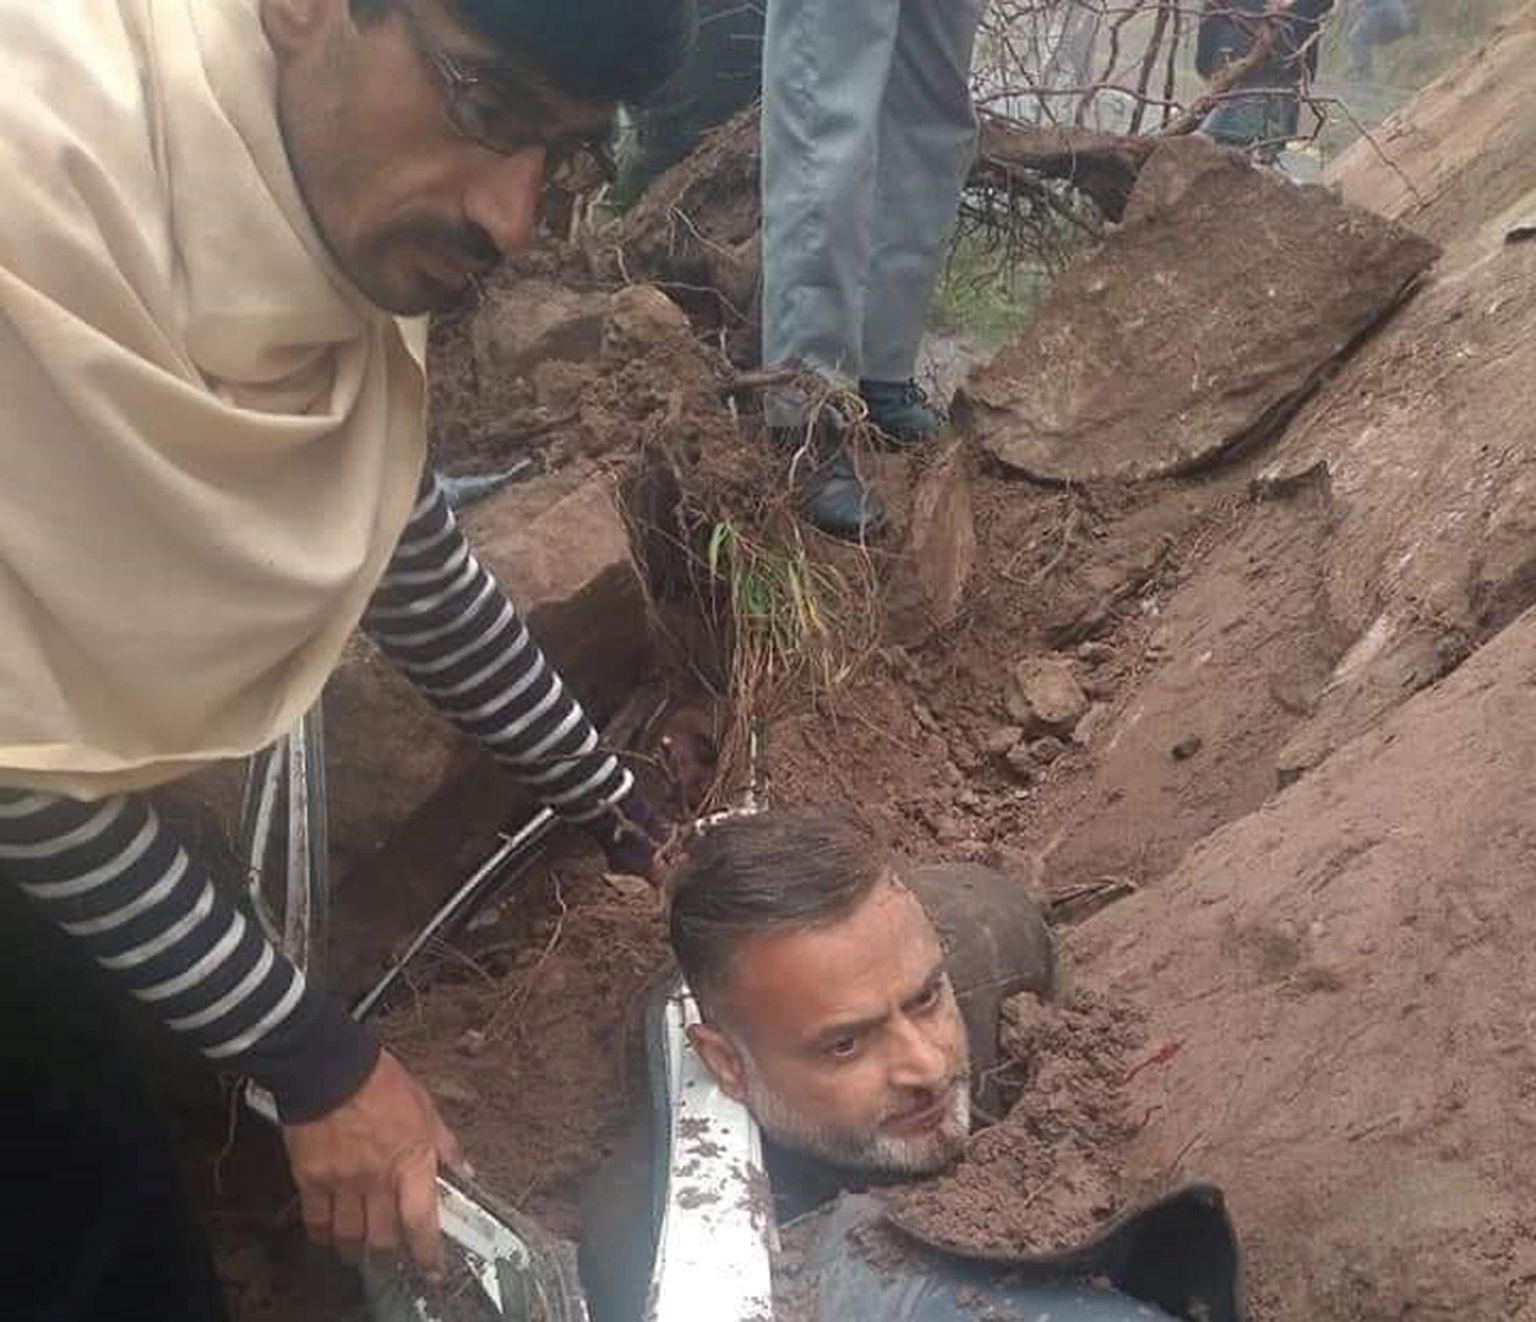 Oma uue autoga sõitnud paikstanlane Rashid Iqbal pääses rahnuvaringust eluga ja ta lõigati autost välja